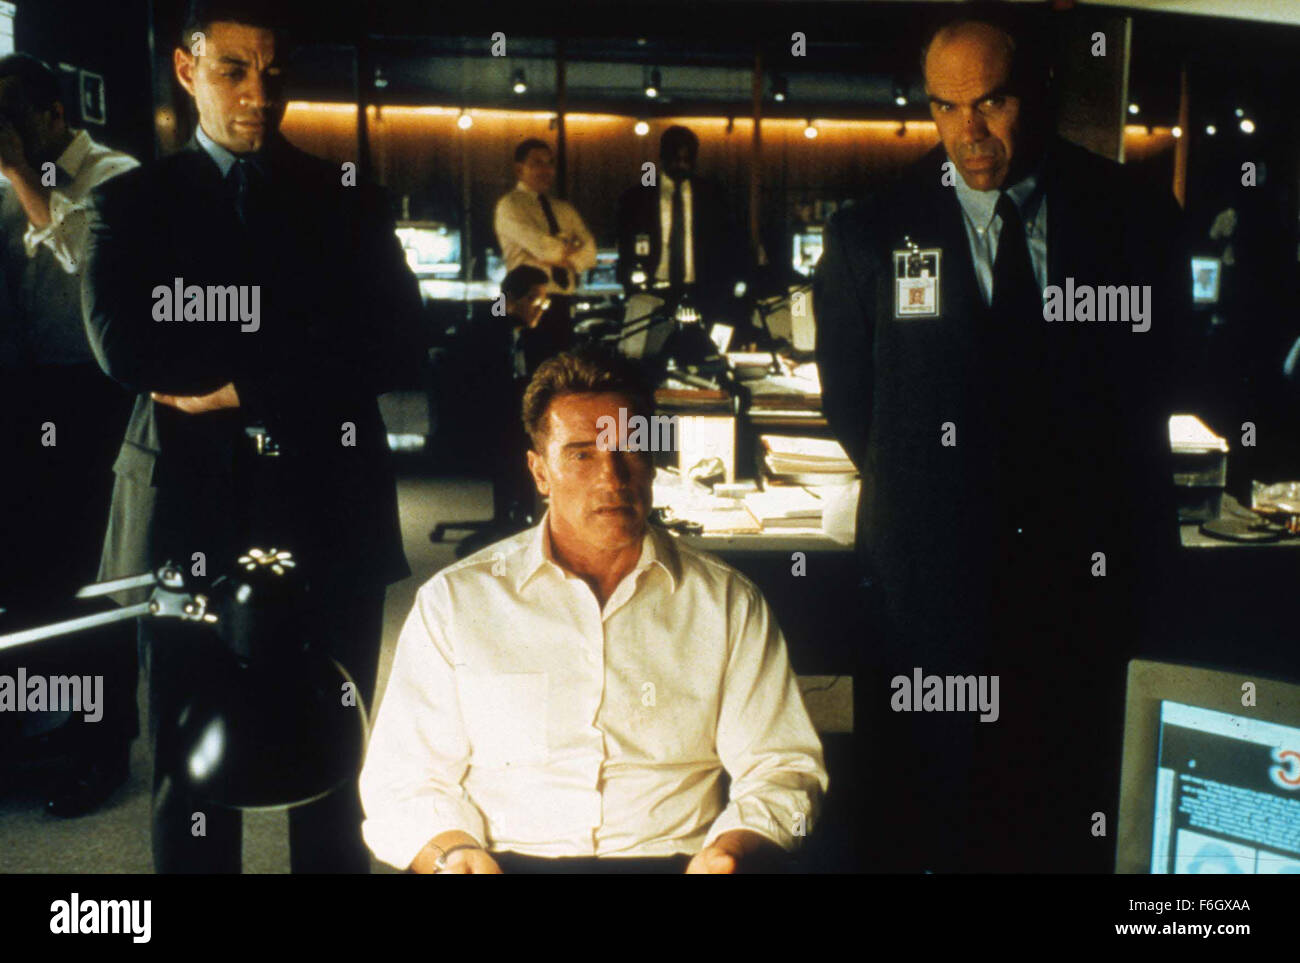 Sep 05, 2001 ; Hollywood, Californie, USA ; acteur ANOLD SCHWARZENAGER comme Gordon Brewer dans le film d'action "dommages collatéraux" réalisé par Andrew Davis. . (Crédit Image : Remi office) Banque D'Images